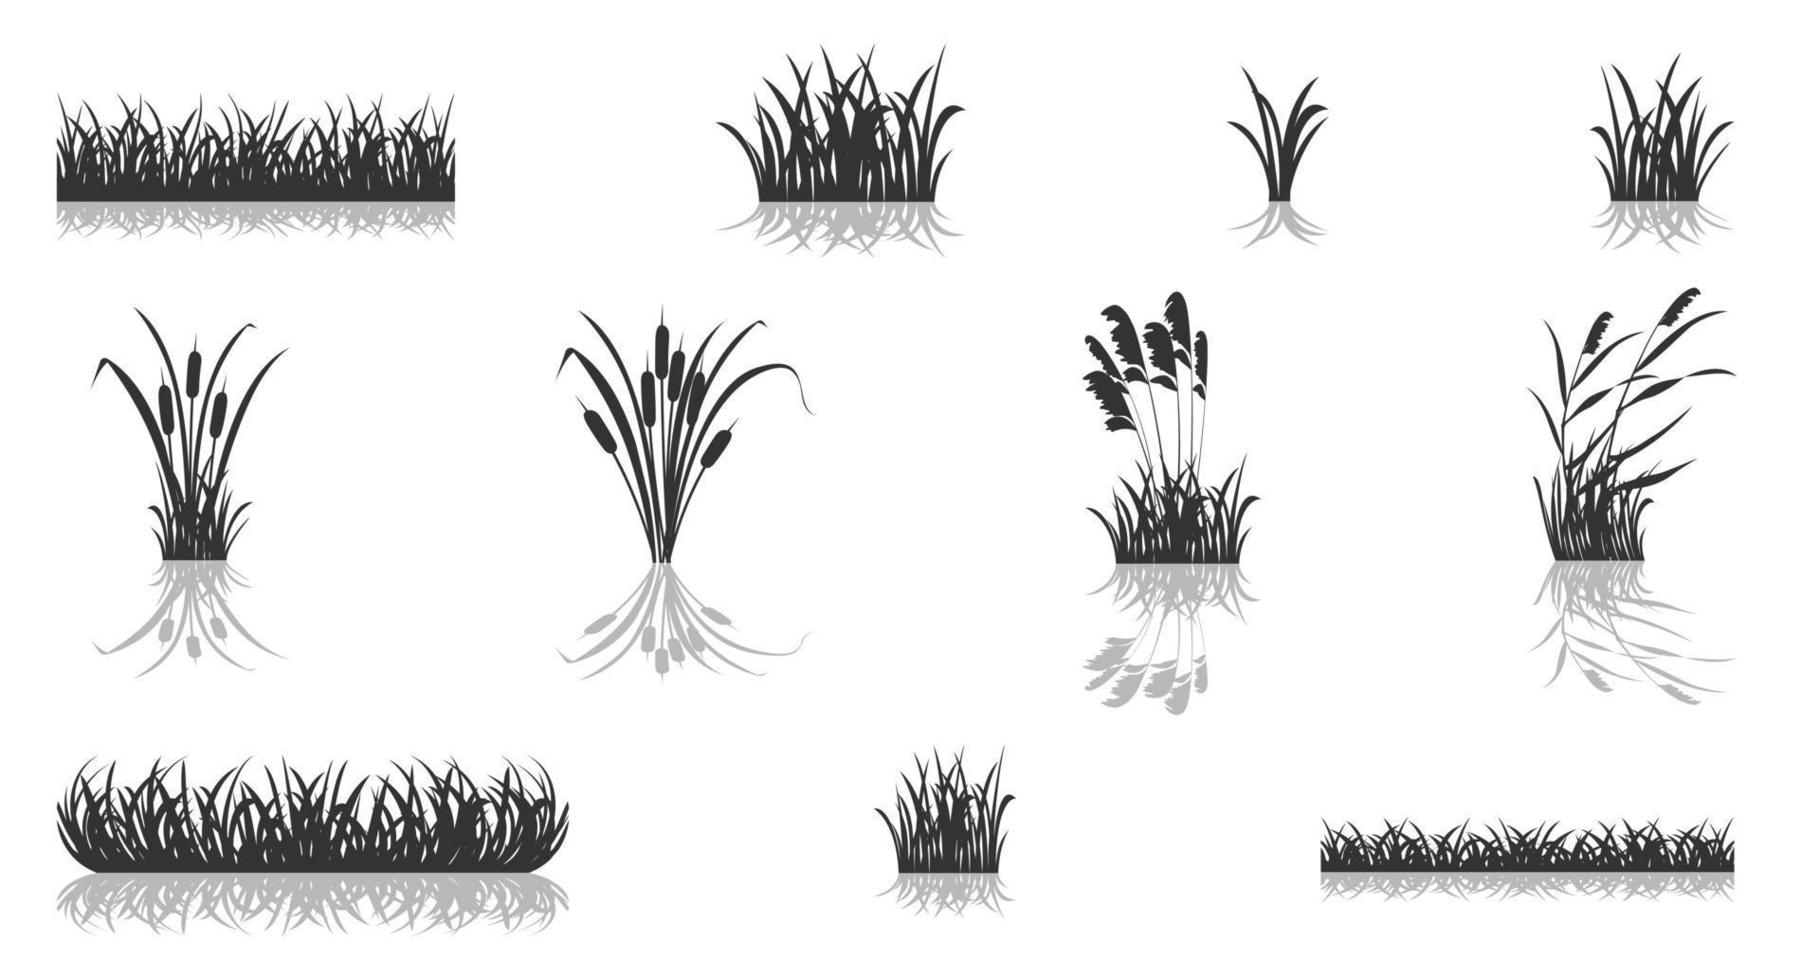 processo de cultivo de trigo em etapas. ilustração de silhueta preta infográfico de germinação de grãos. vetor